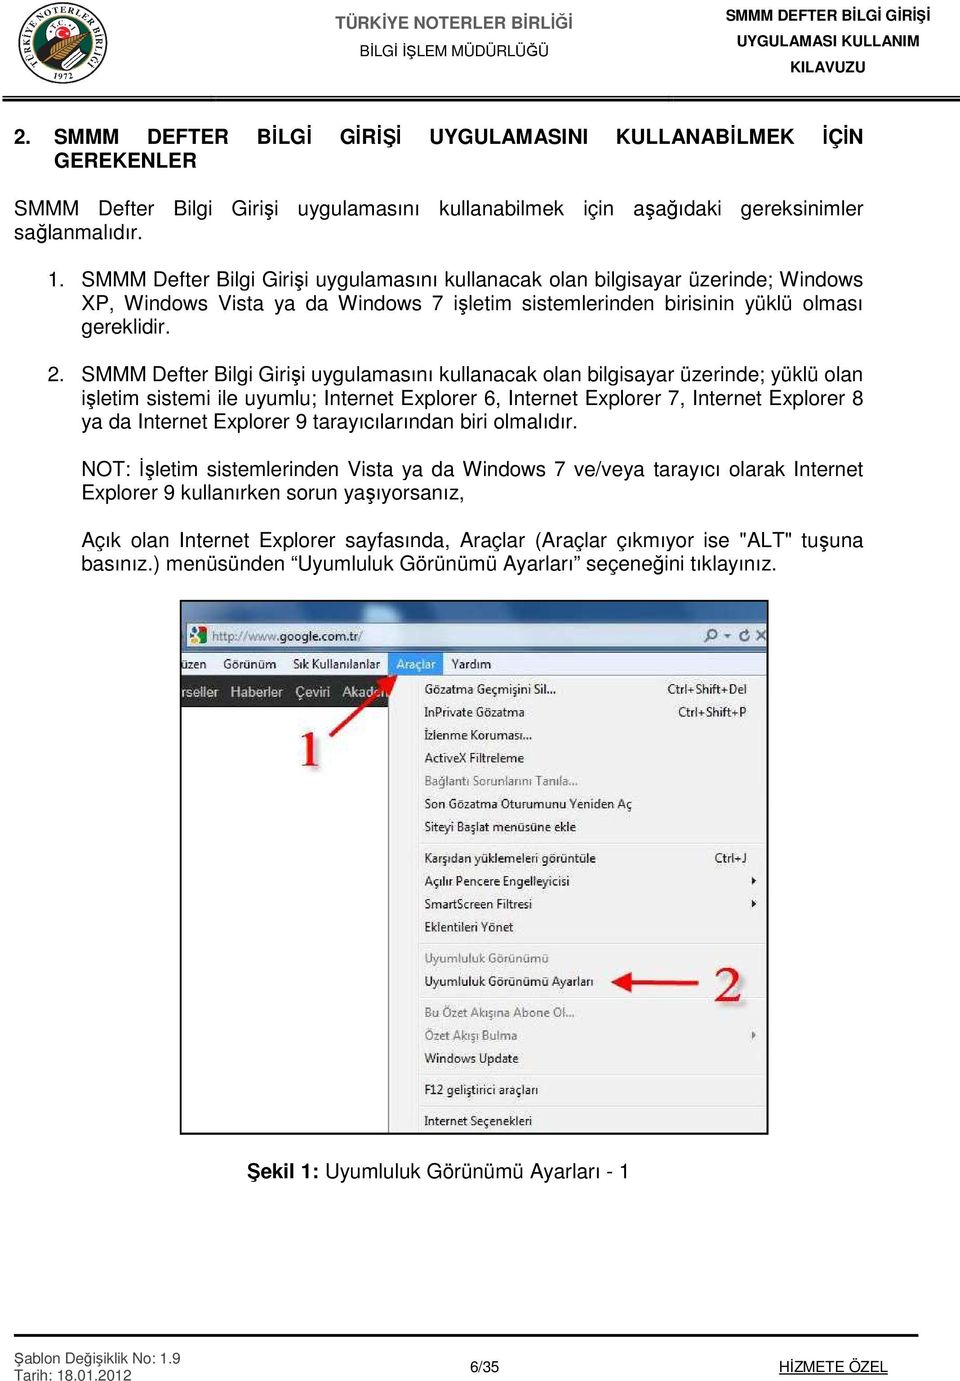 SMMM Defter Bilgi Girişi uygulamasını kullanacak olan bilgisayar üzerinde; yüklü olan işletim sistemi ile uyumlu; Internet Explorer 6, Internet Explorer 7, Internet Explorer 8 ya da Internet Explorer